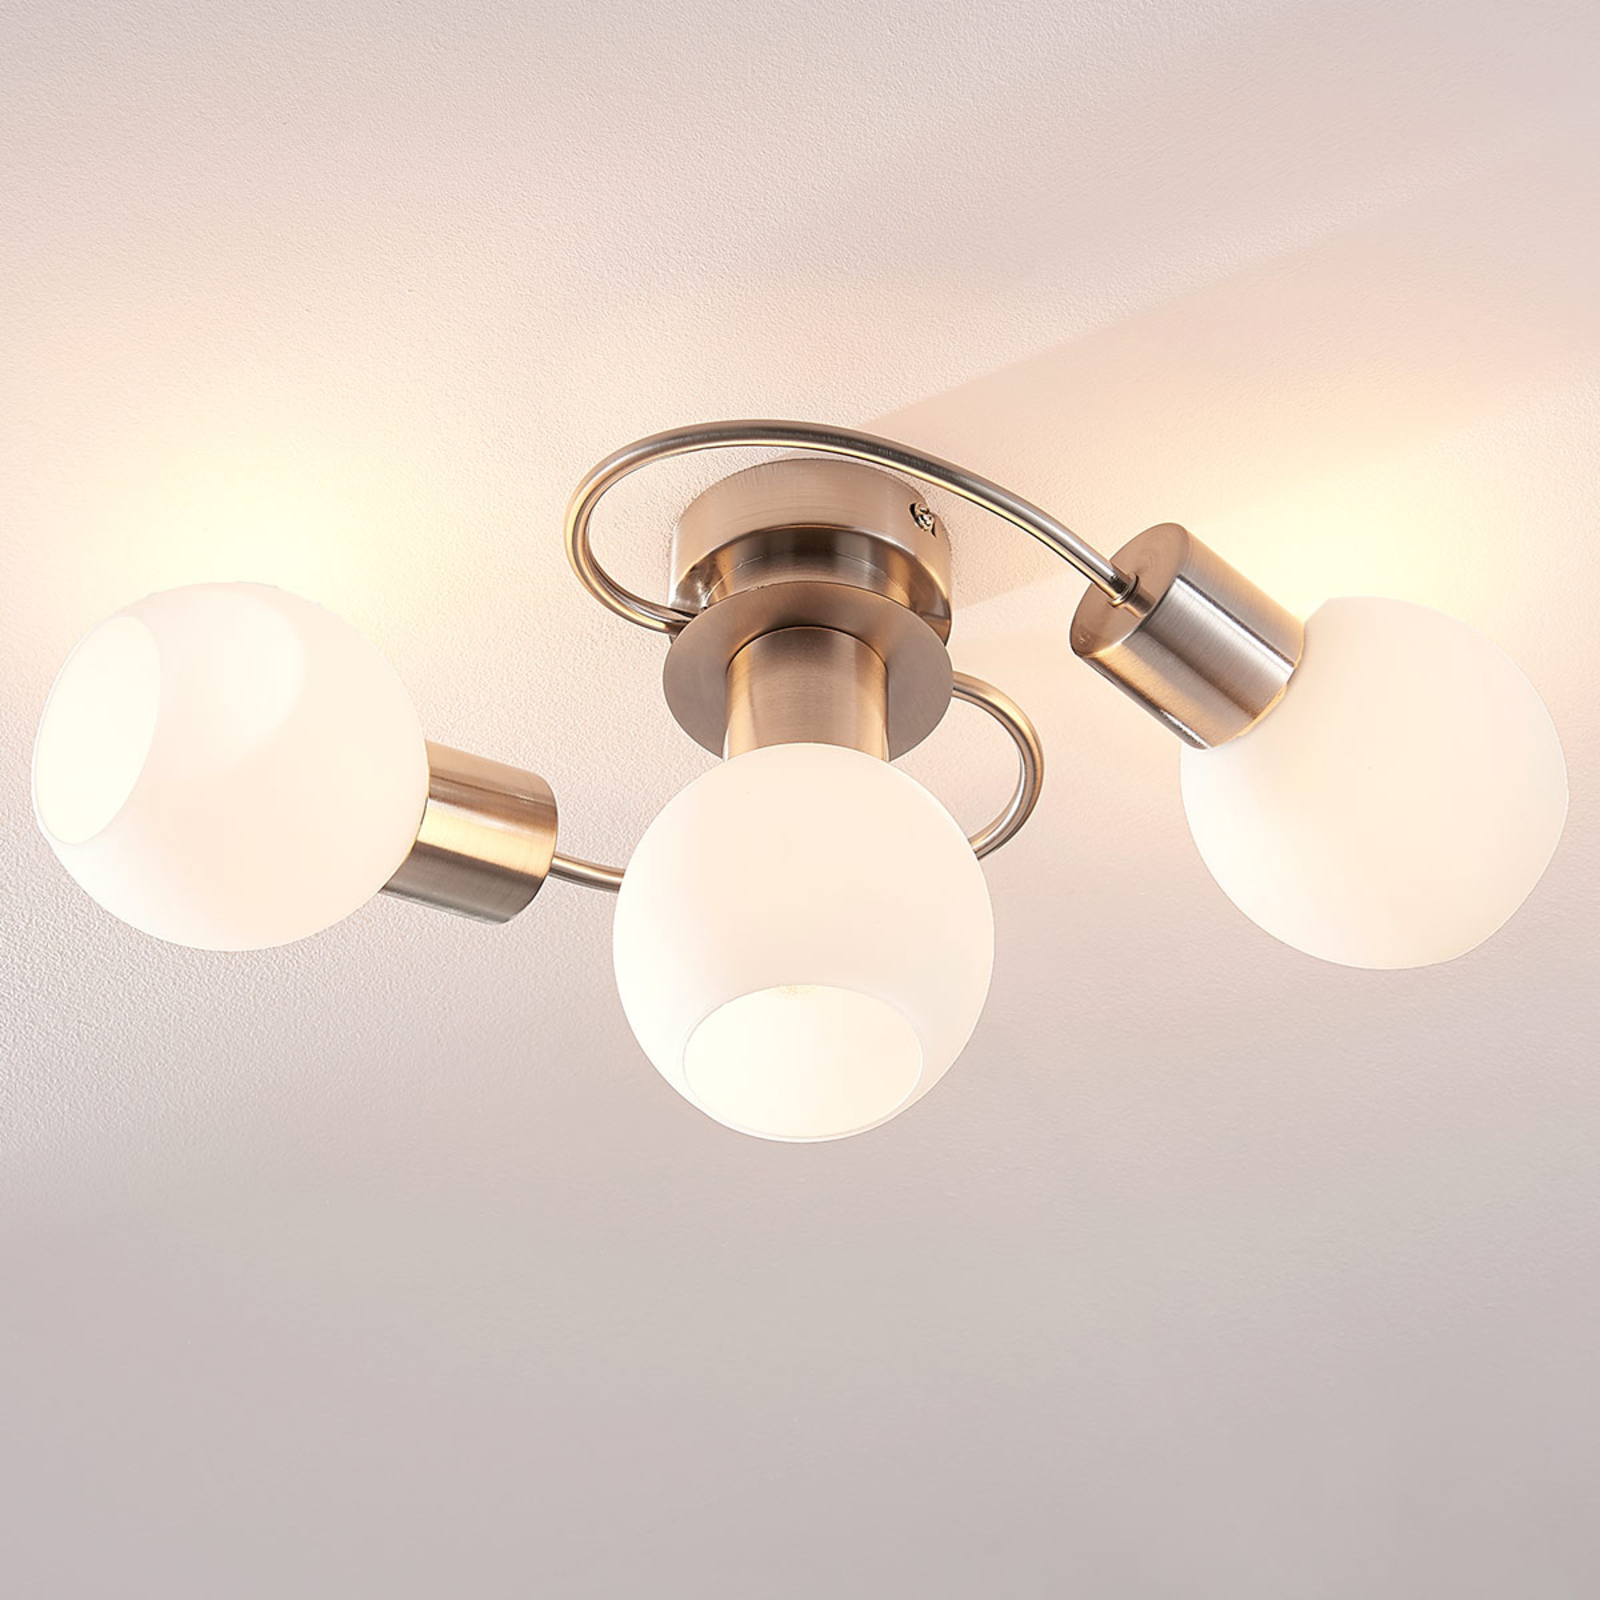 LED-Deckenlampe Arda 4-flammig Dimmbar Per Schalter Lampenwelt Wohnzimmerlampe 